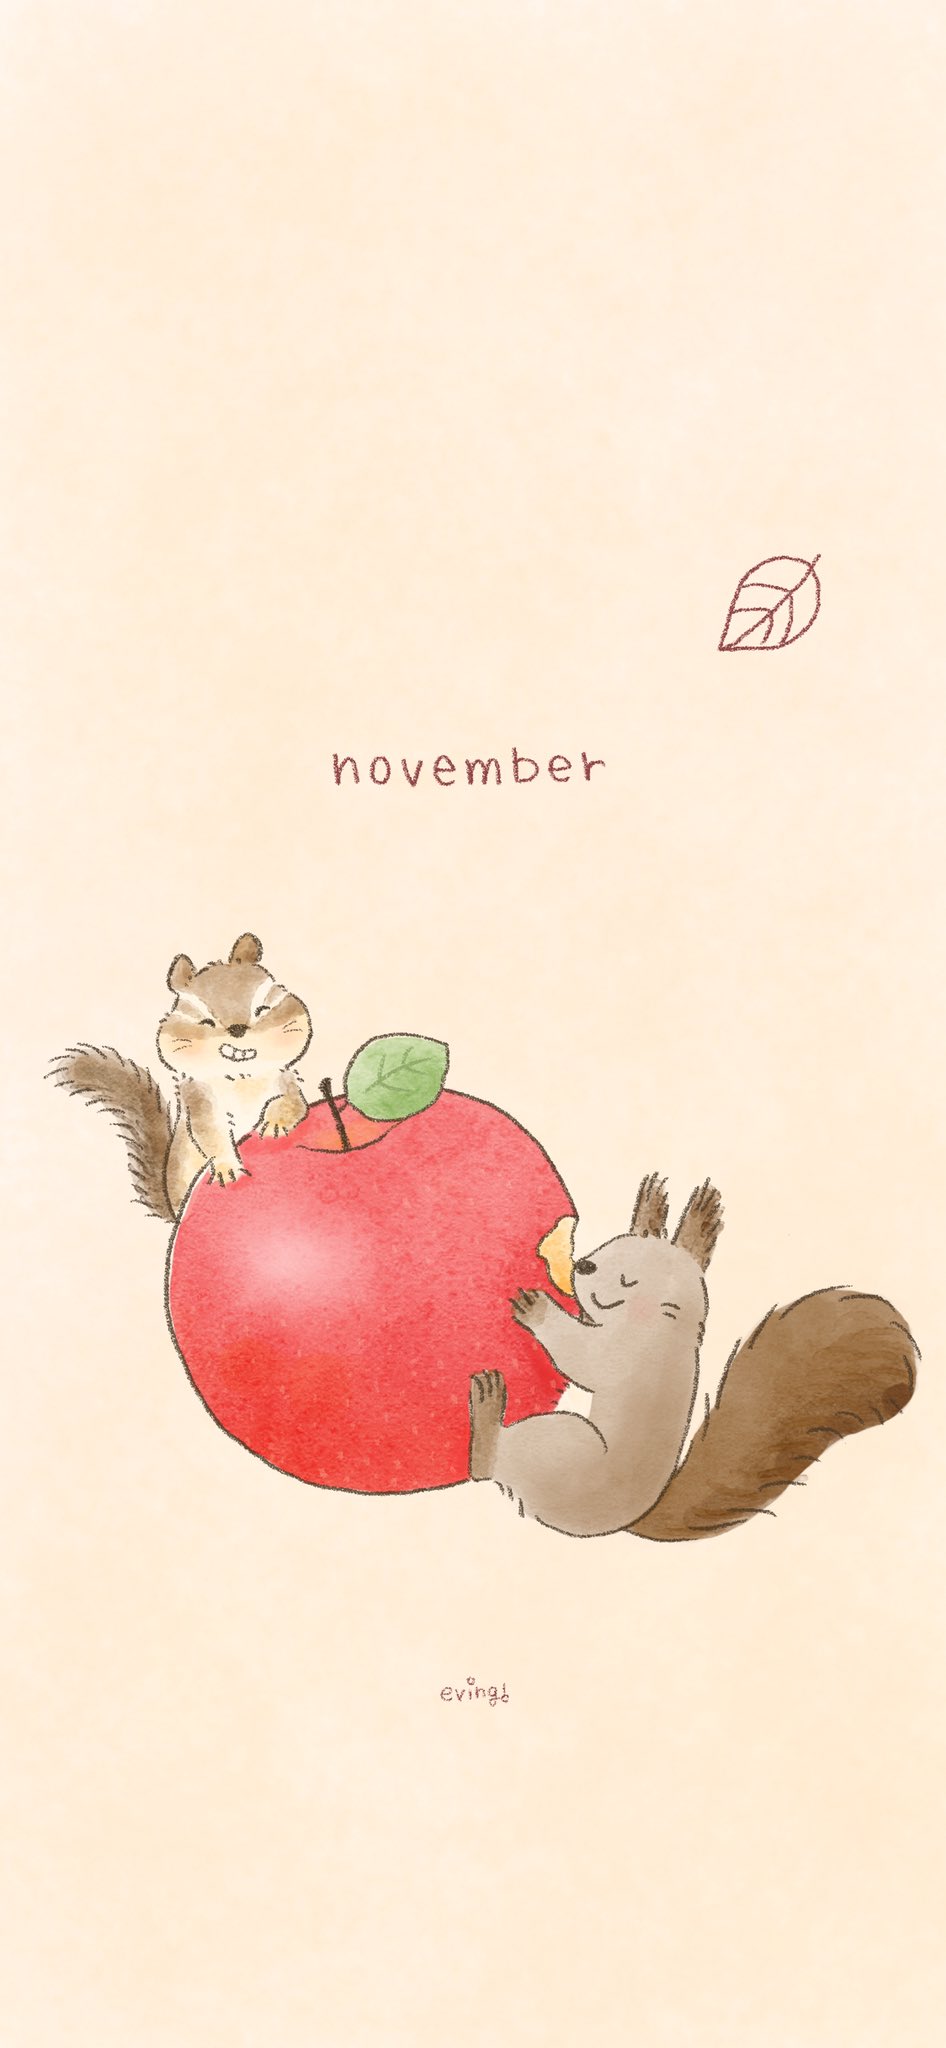 Twitter 上的 えびんぐ イラストレーター 11月スマホ壁紙配布 11月はりんごとリスのイラストです ホームページでは昨年の11月壁紙も無料ダウンロードできますのでぜひチェックしてみてください T Co Cncrjhnmqi 11月 11月壁紙 November